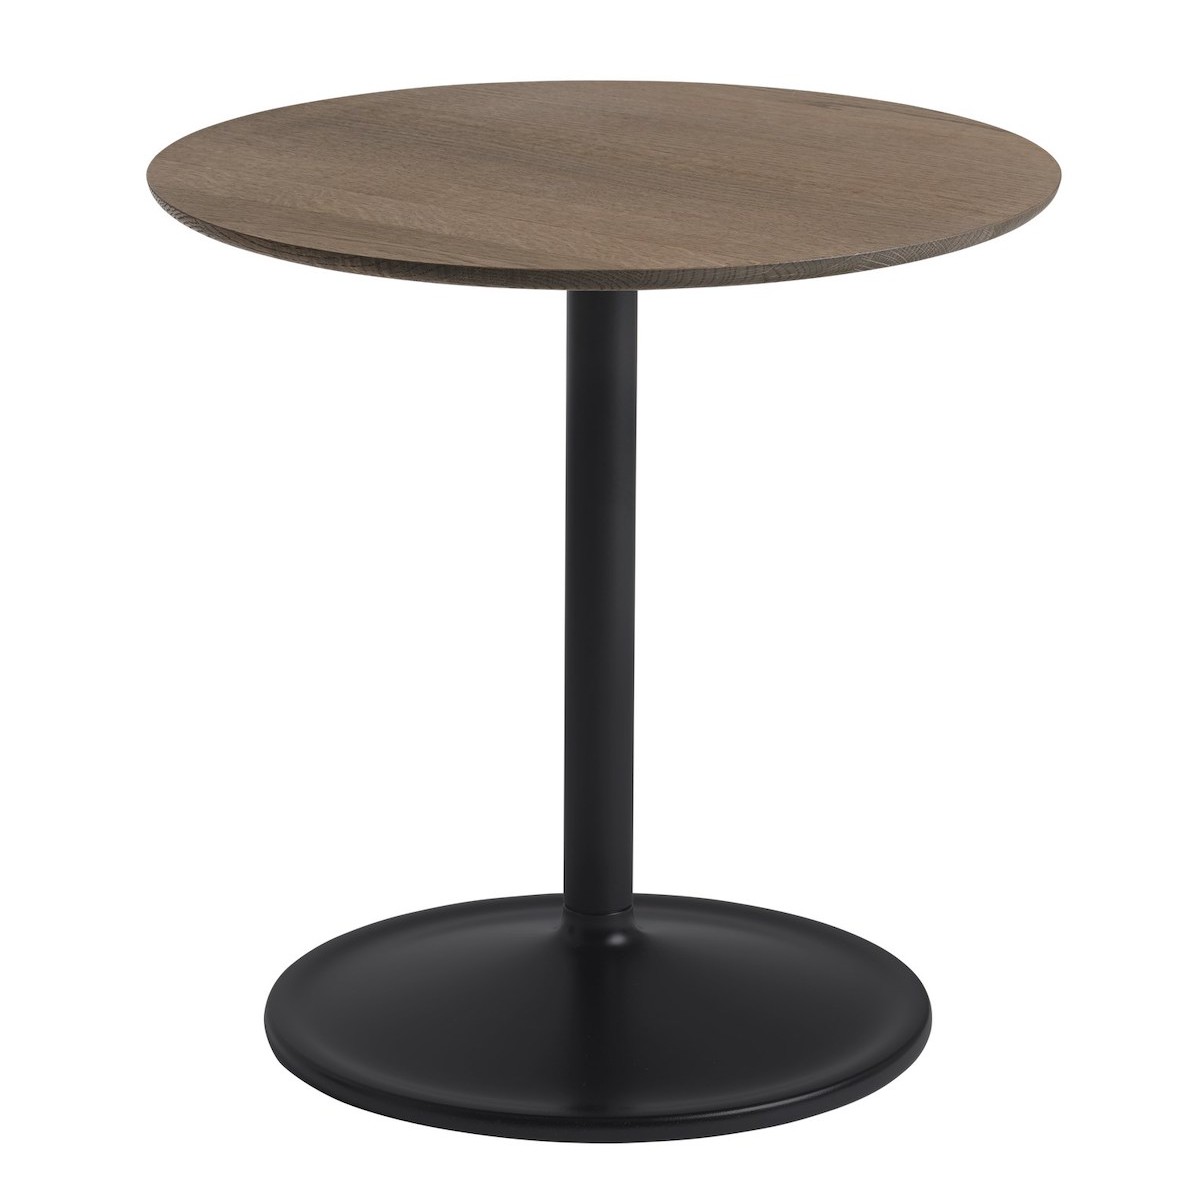 Noir + chêne fumé - Ø48cm, H48cm - table d'appoint Soft